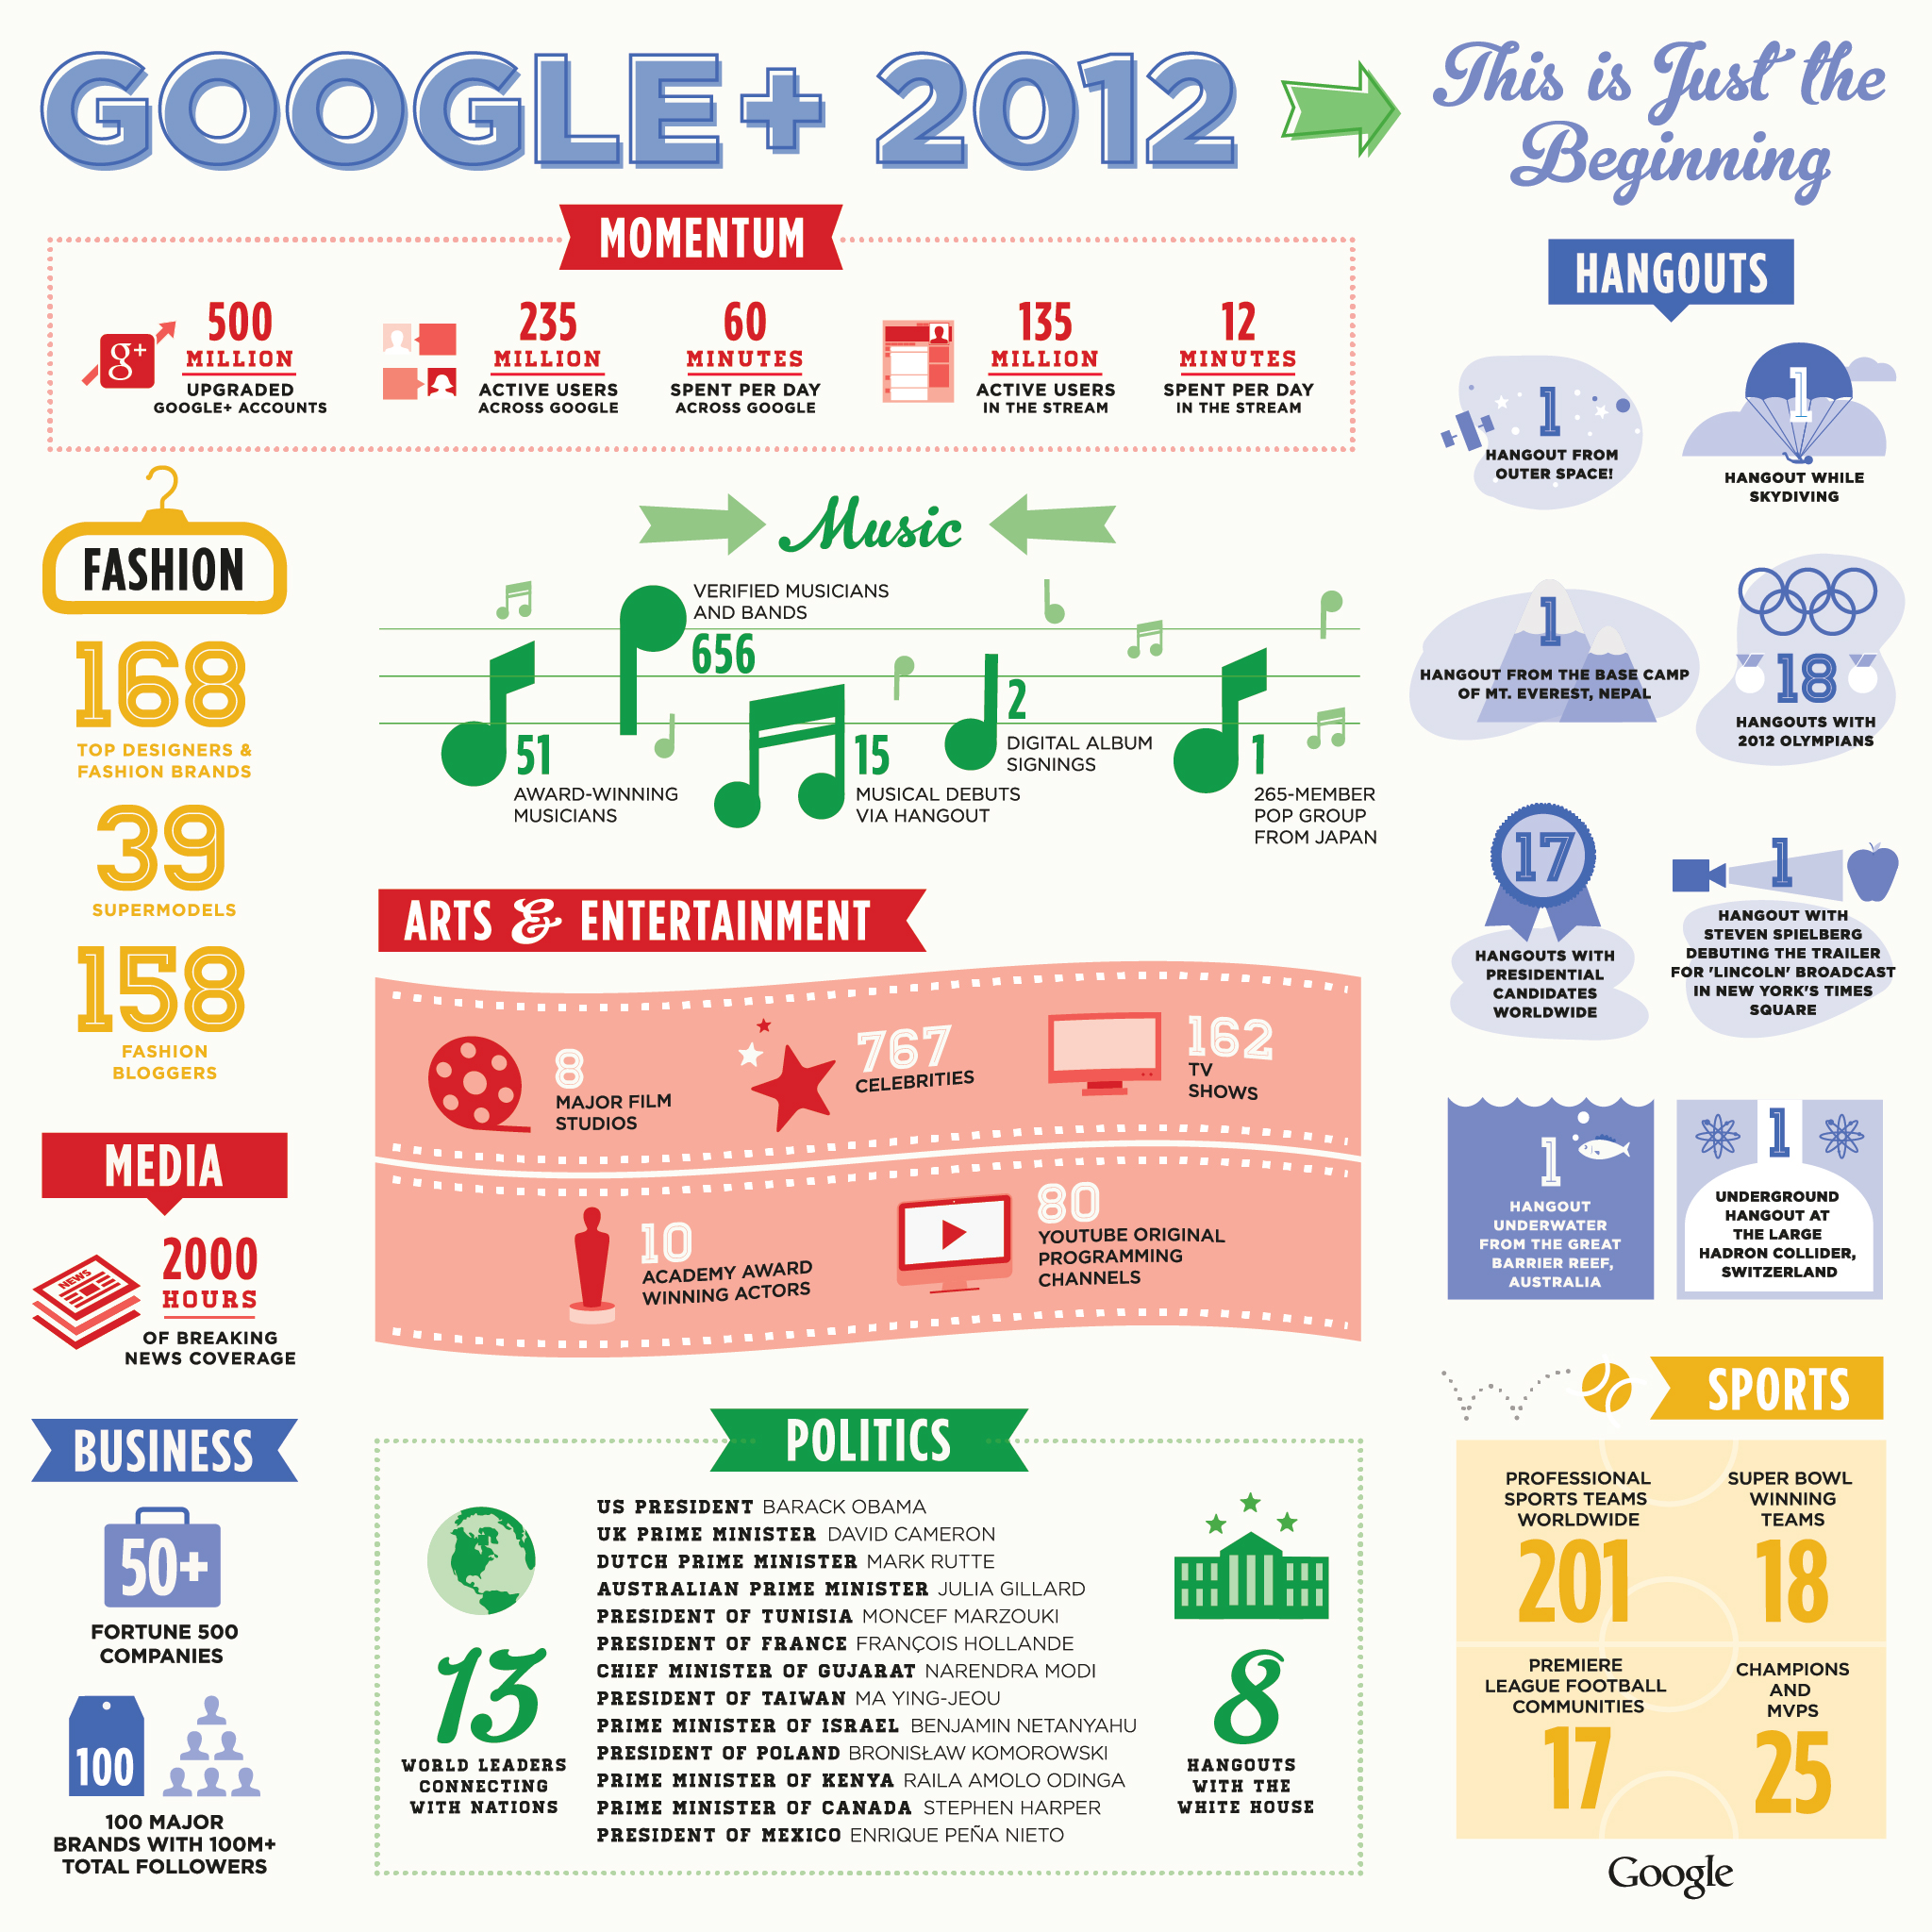 Google+ 2012 Infographic